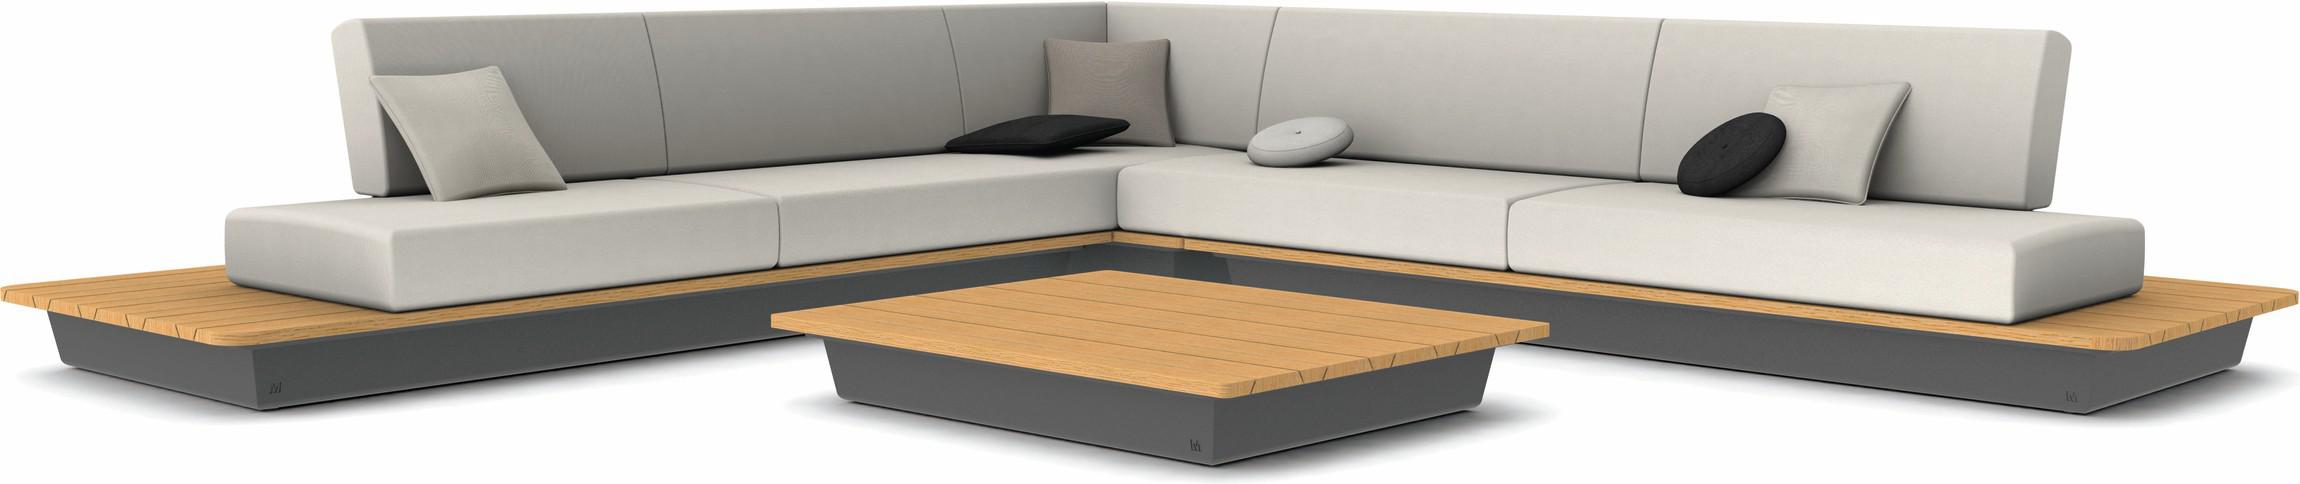 Air concepto 5 - lava - tablero de madera iroko